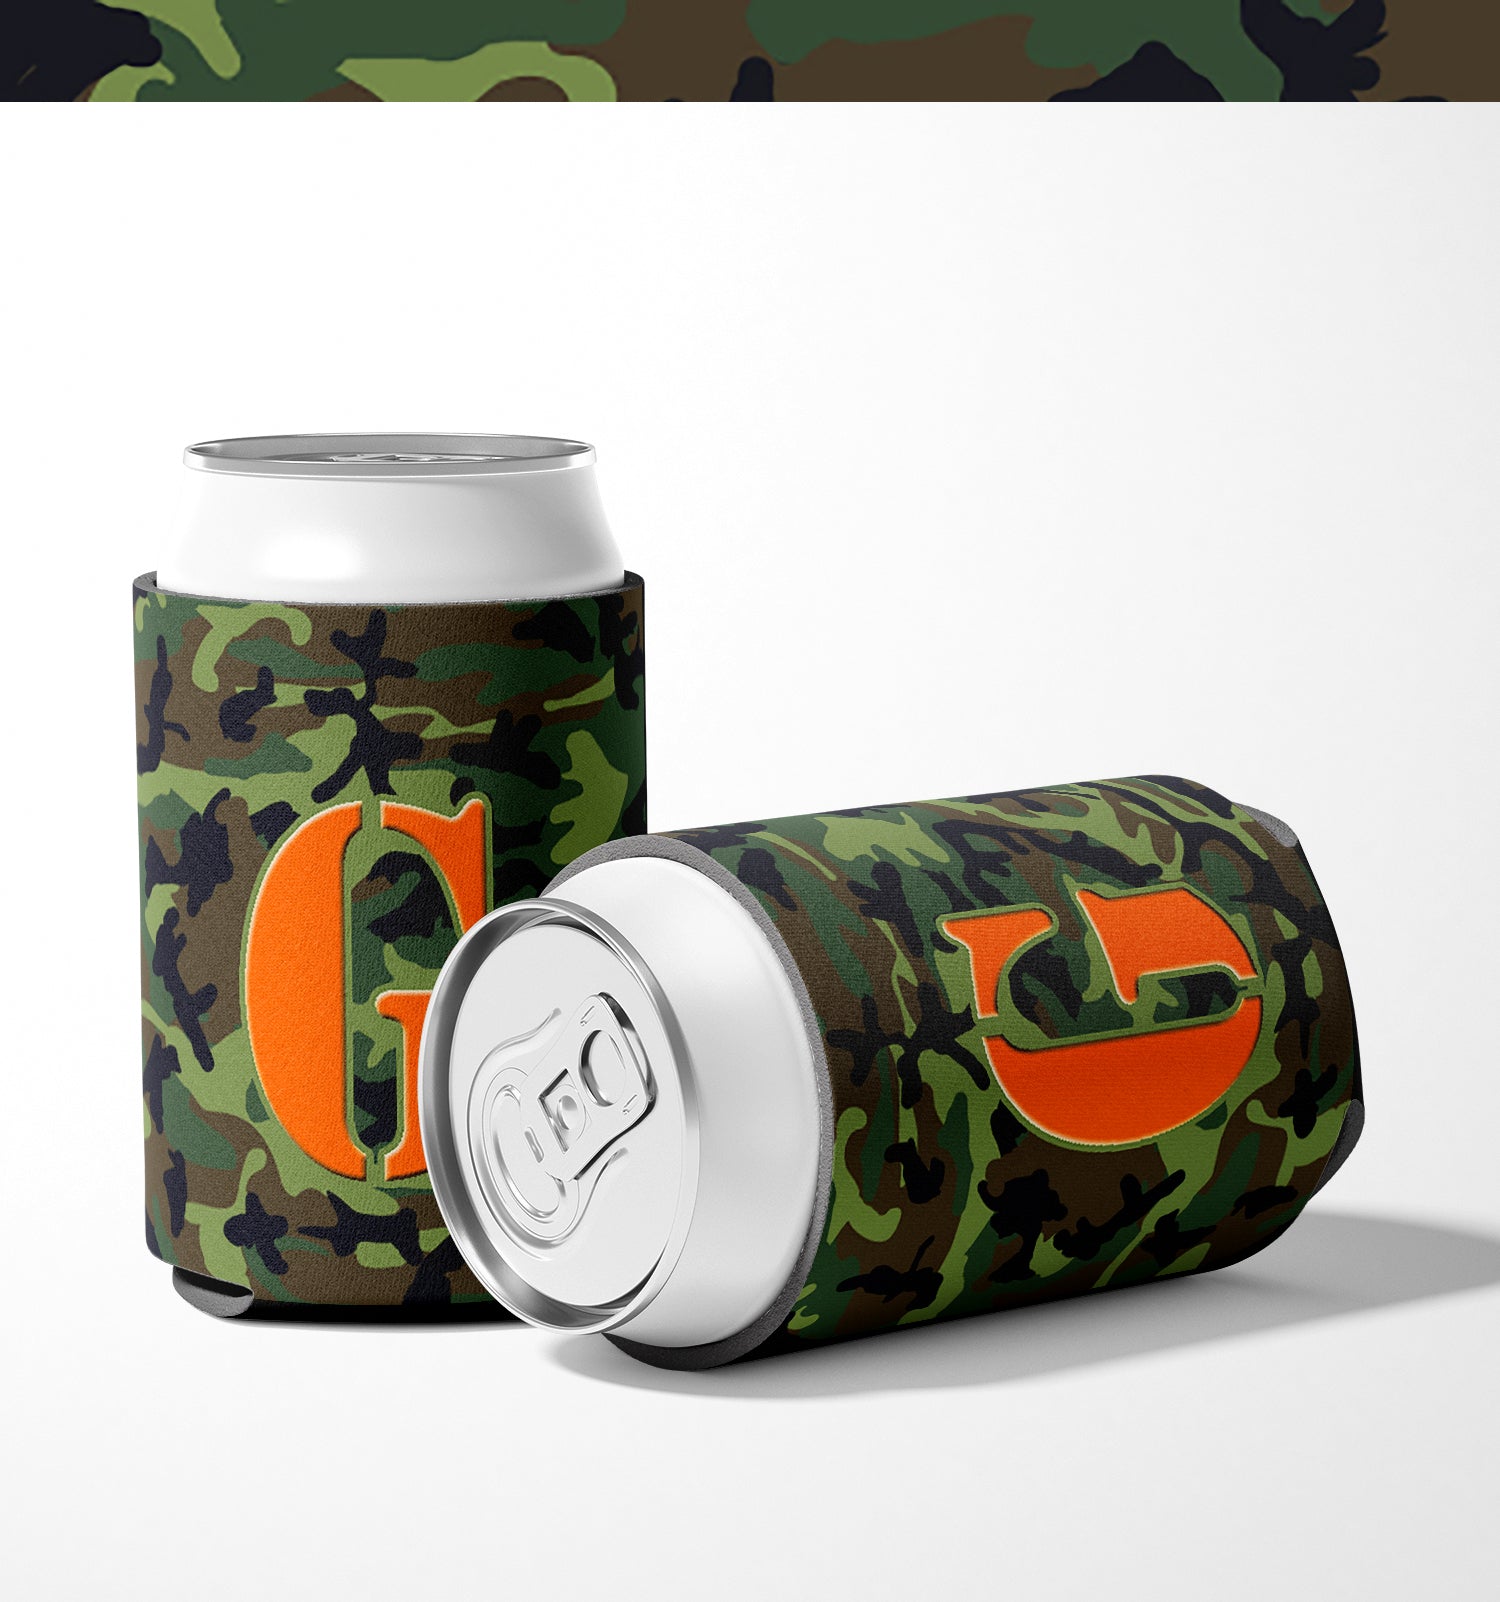 Letter G Initial Monogram - Camo Green Can or Bottle Beverage Insulator Hugger.